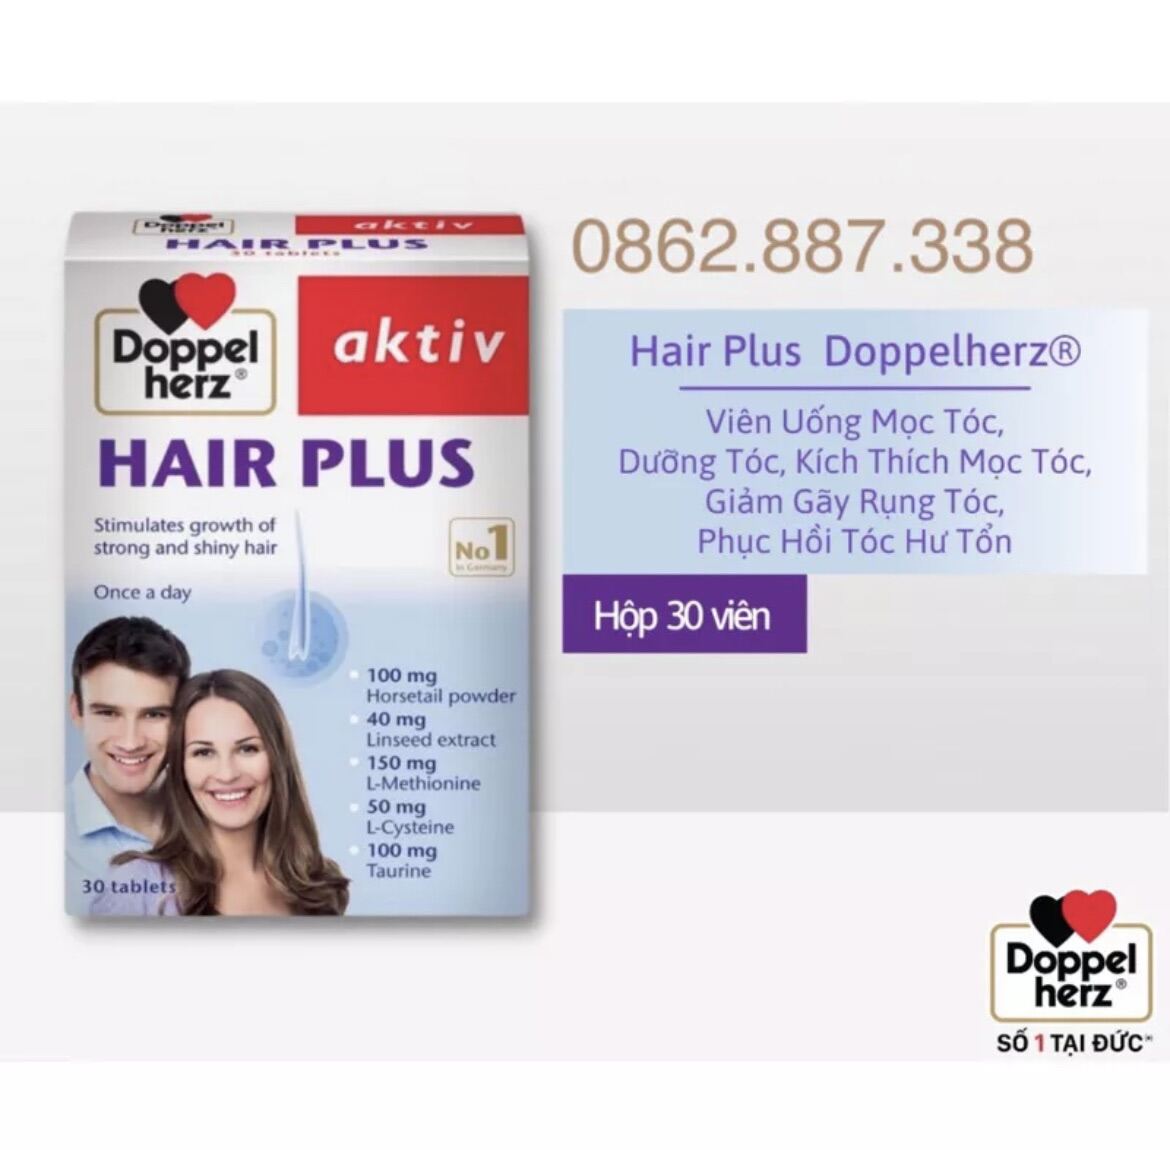 Viên Uống Mọc Tóc Hair Plus - Dưỡng Tóc, Kích Thích Mọc Tóc, Bitotin